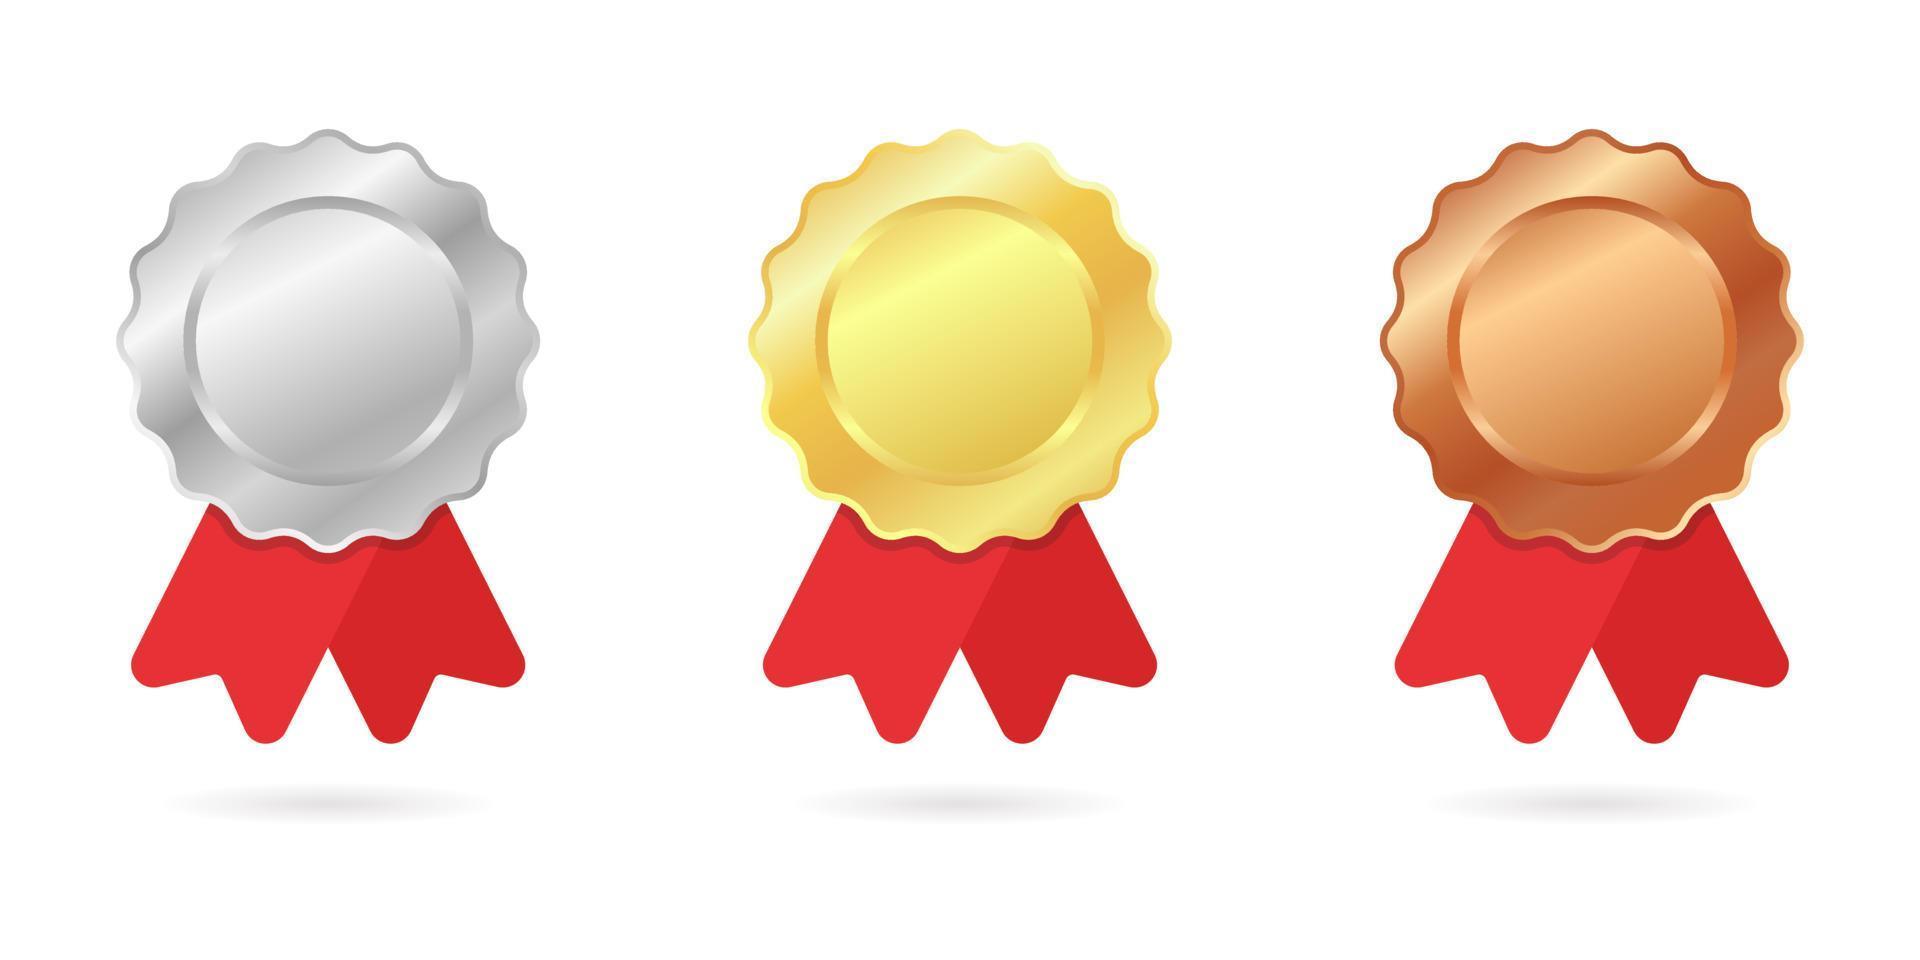 oro, argento, bronzo assegnato ai vincitori del campionato. raccolta di medaglie con nastro rosso e ombra su sfondo bianco. trofeo distintivo in metallo rotondo. illustrazione vettoriale isolata.